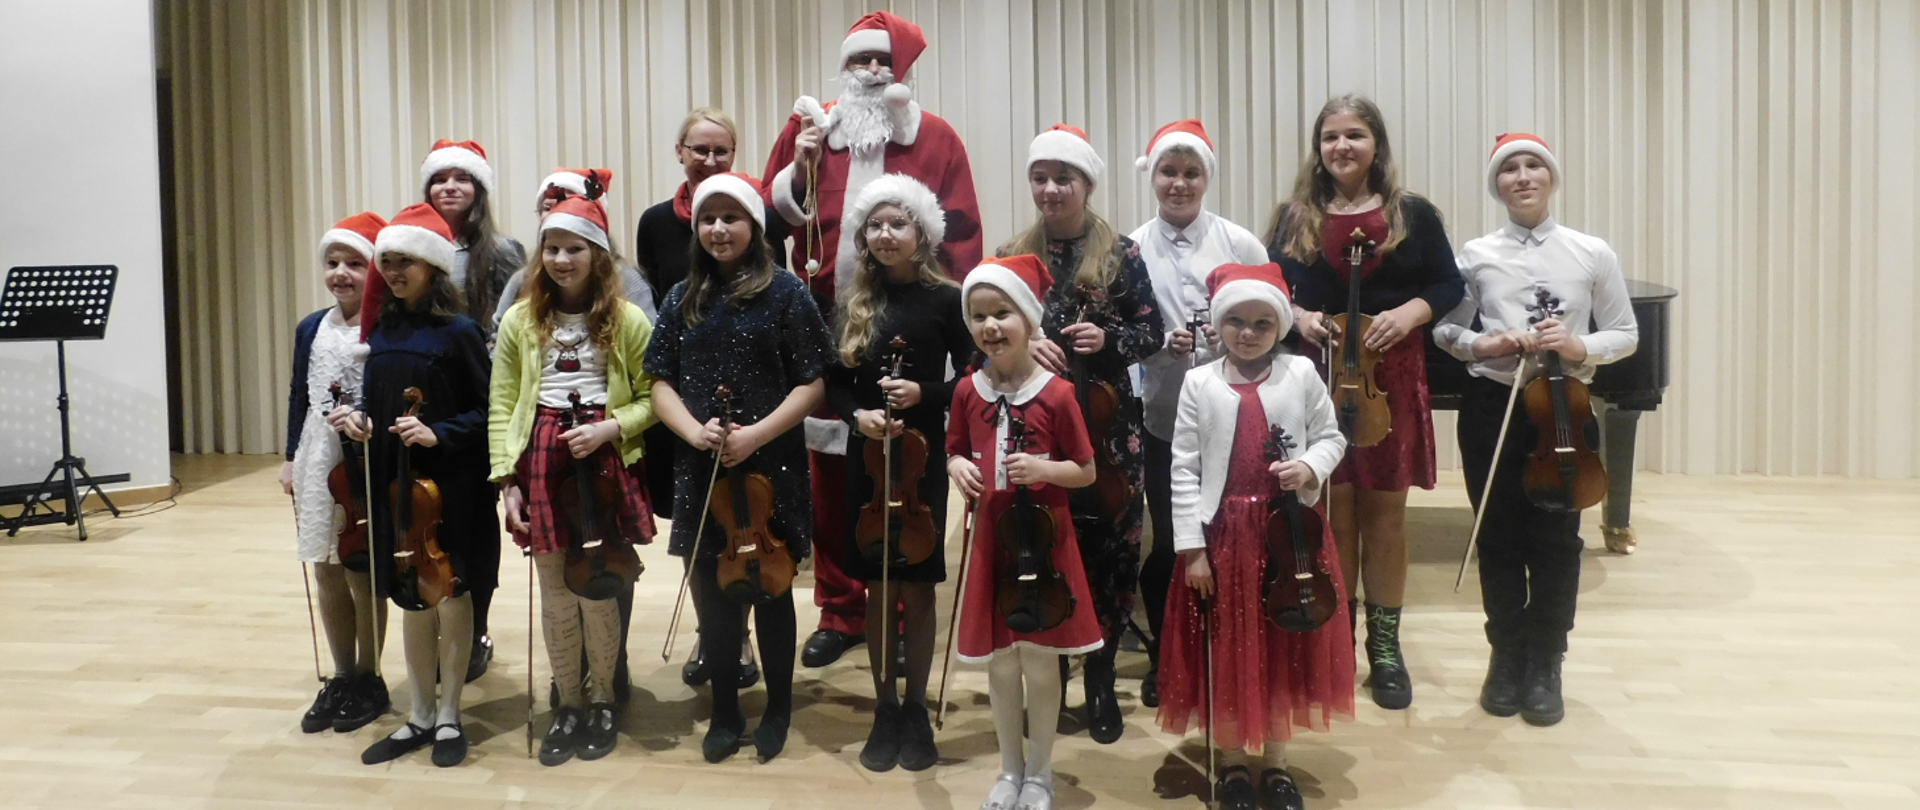 Na zdjęciu grupa uczniów, którzy trzymają skrzypce i mają założone czerwone czapeczki mikołajkowe. Za nimi stoi w czerwonym stroju Święty Mikołaj.